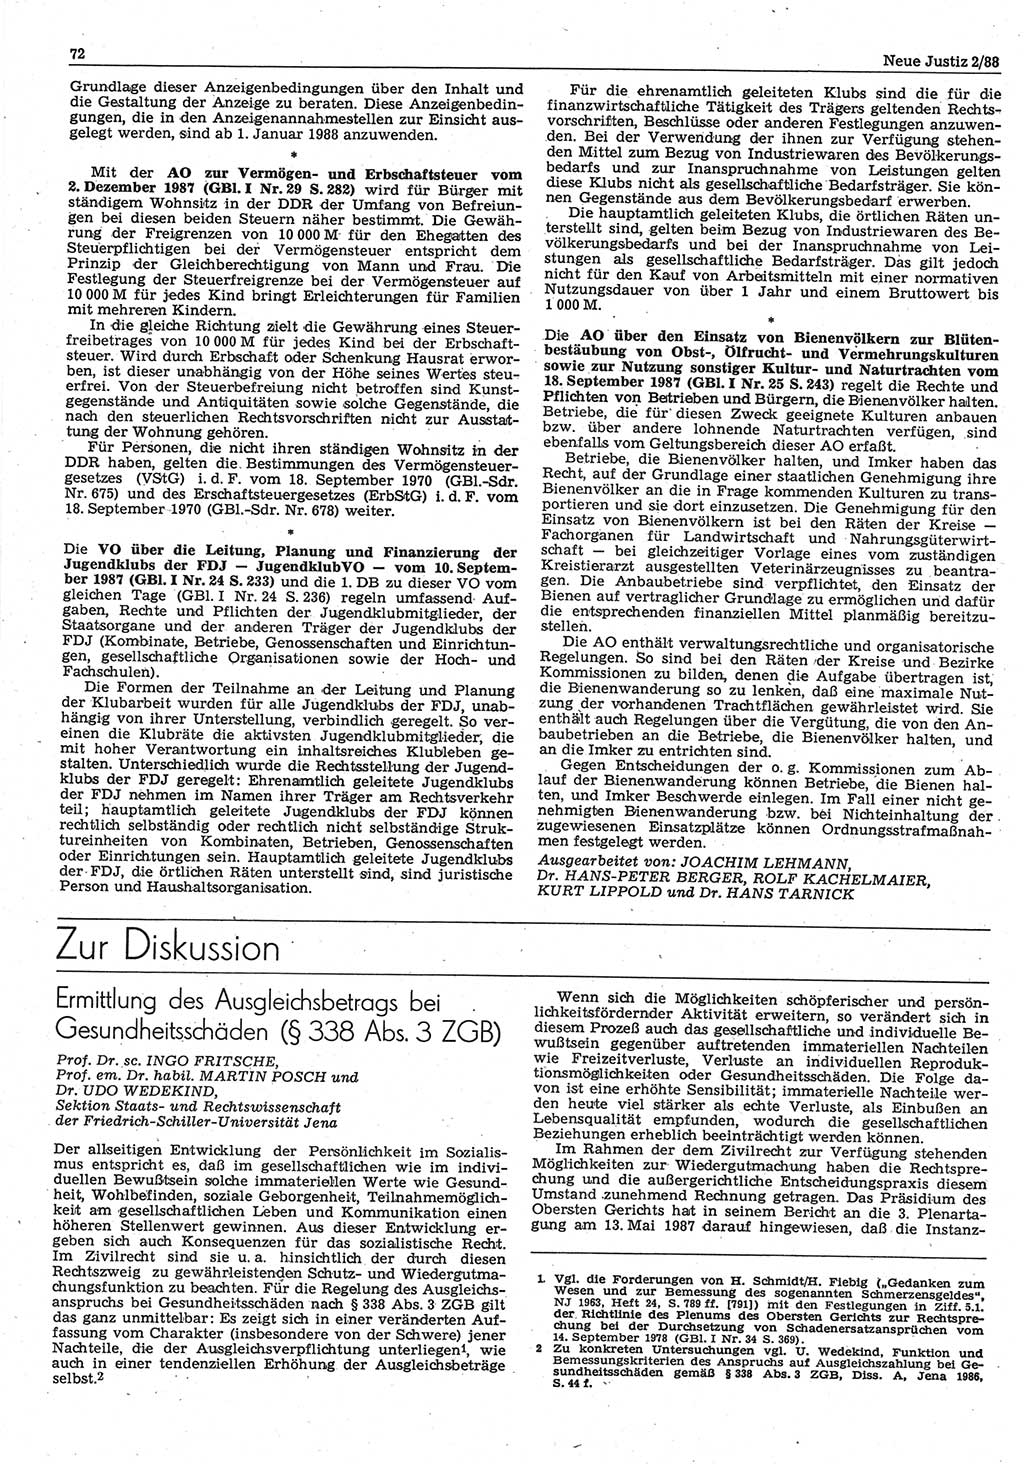 Neue Justiz (NJ), Zeitschrift für sozialistisches Recht und Gesetzlichkeit [Deutsche Demokratische Republik (DDR)], 42. Jahrgang 1988, Seite 72 (NJ DDR 1988, S. 72)